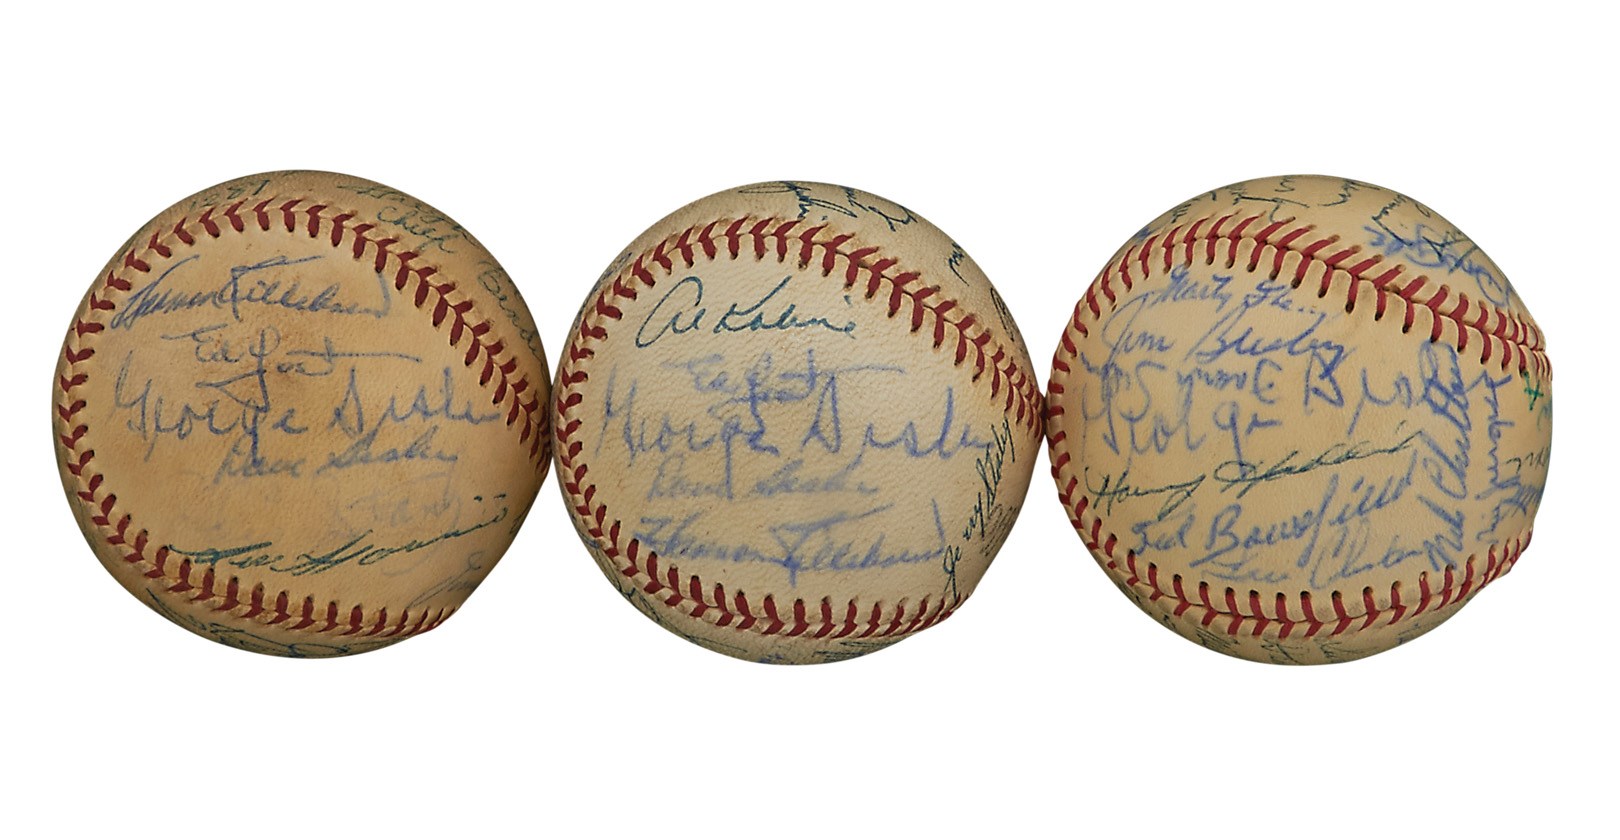 1960s Hall of Fame & Old Timers Signed Baseballs ALL w/George Sisler (PSA) (3)